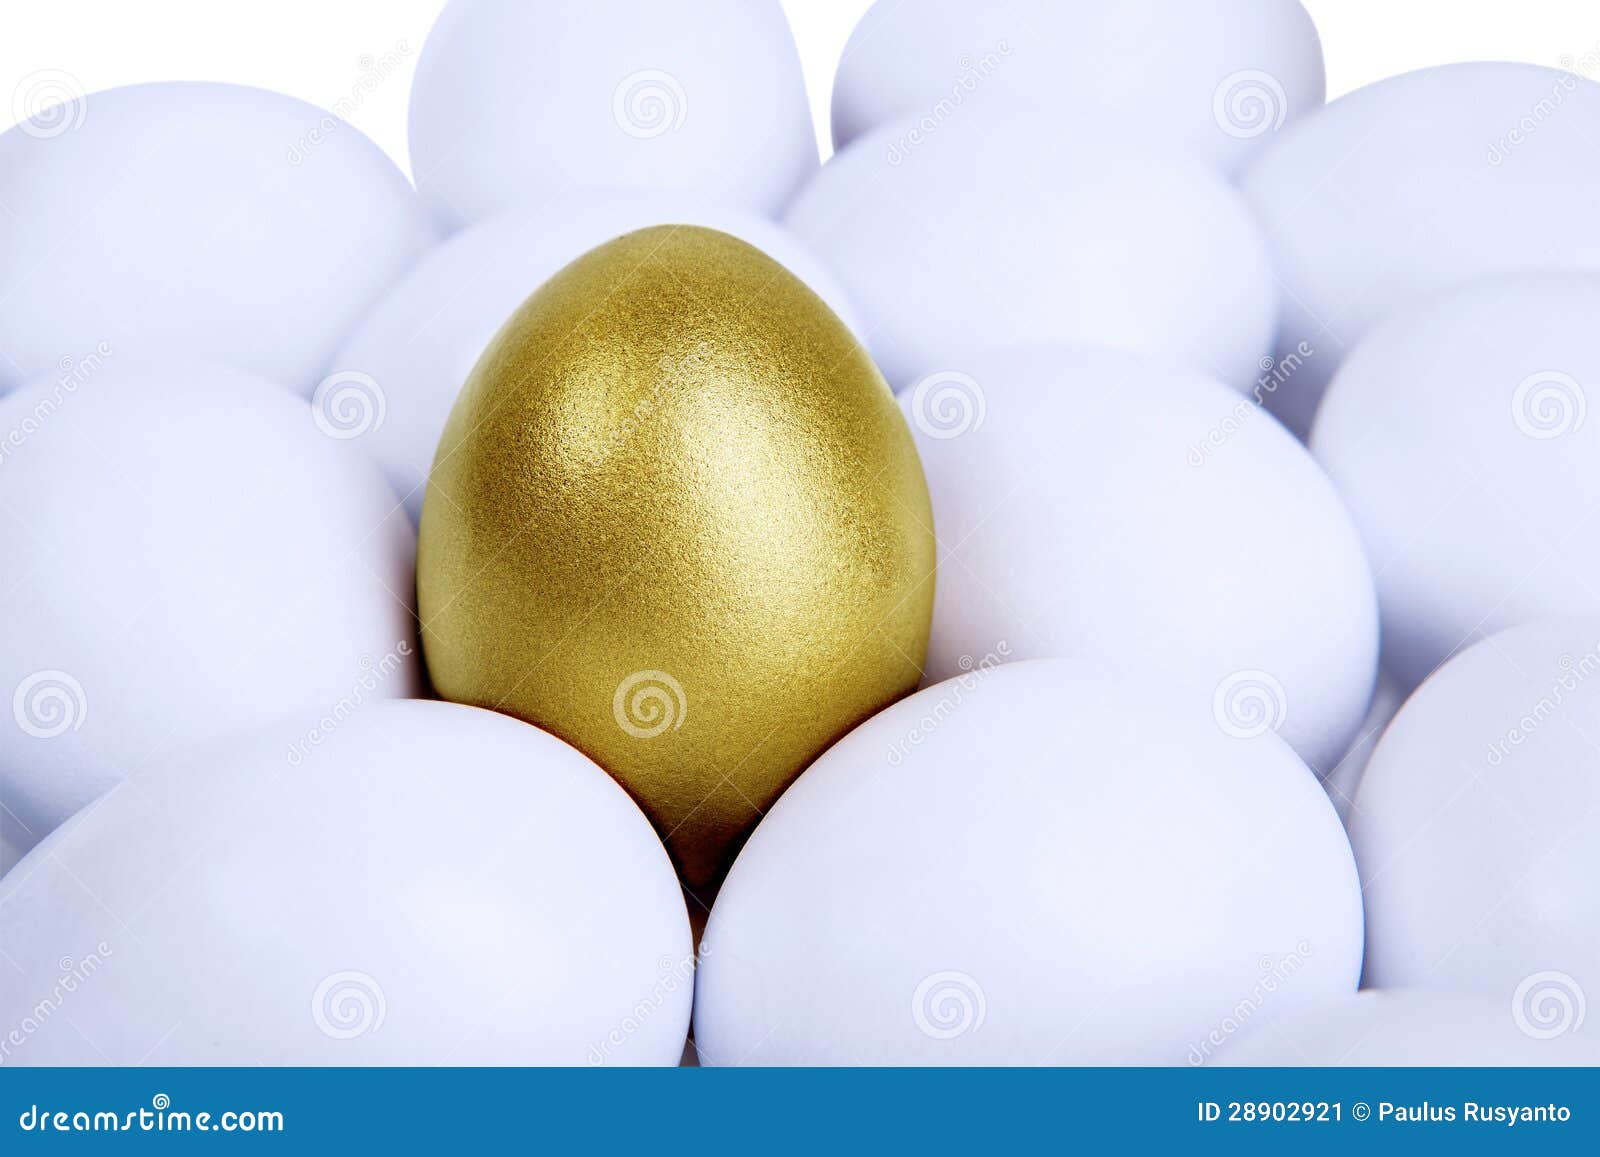 outstanding golden egg